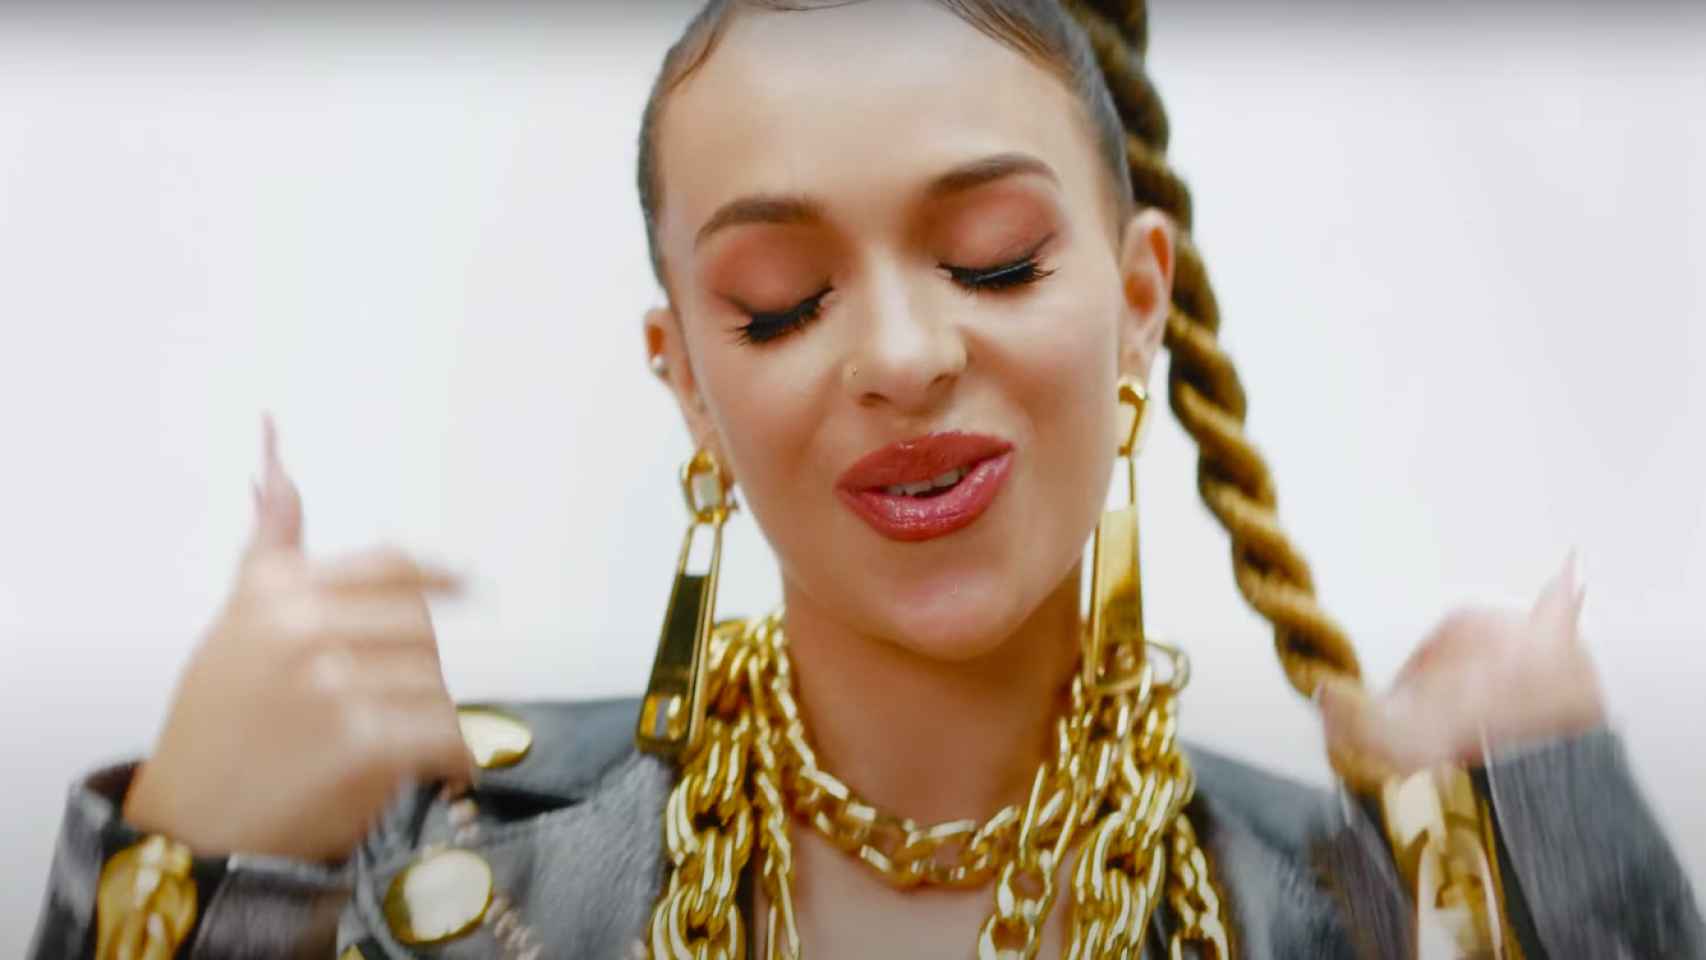 La cantante barcelonesa Bad Gyal en el videoclip de 'Blin blin', canción integrada en su nuevo EP 'Warm Up' / YOUTUBE